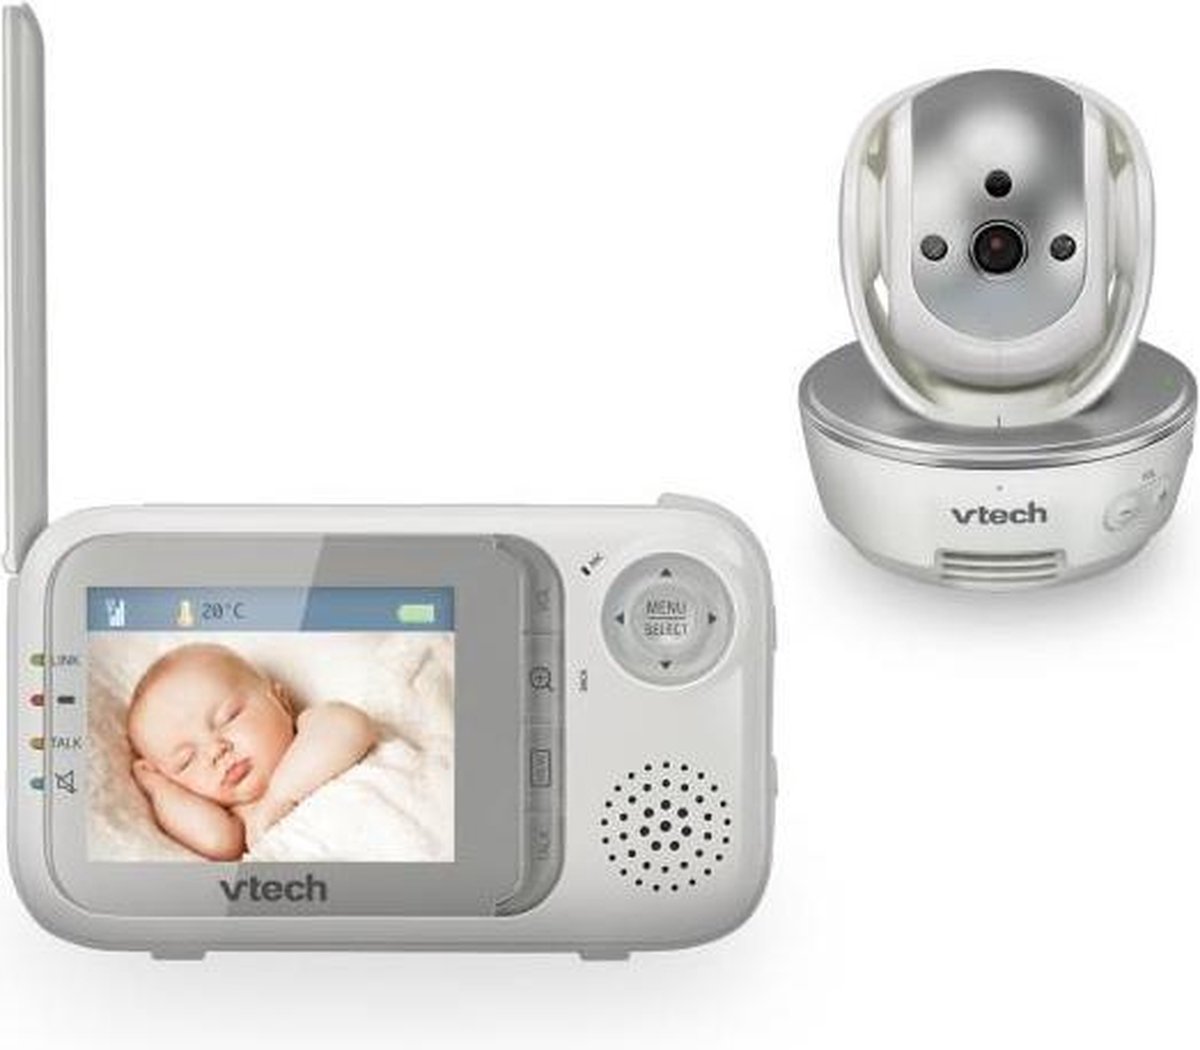 VTech Baby 80-026600 - Babymonitor BM 3500, grau/weiß - 